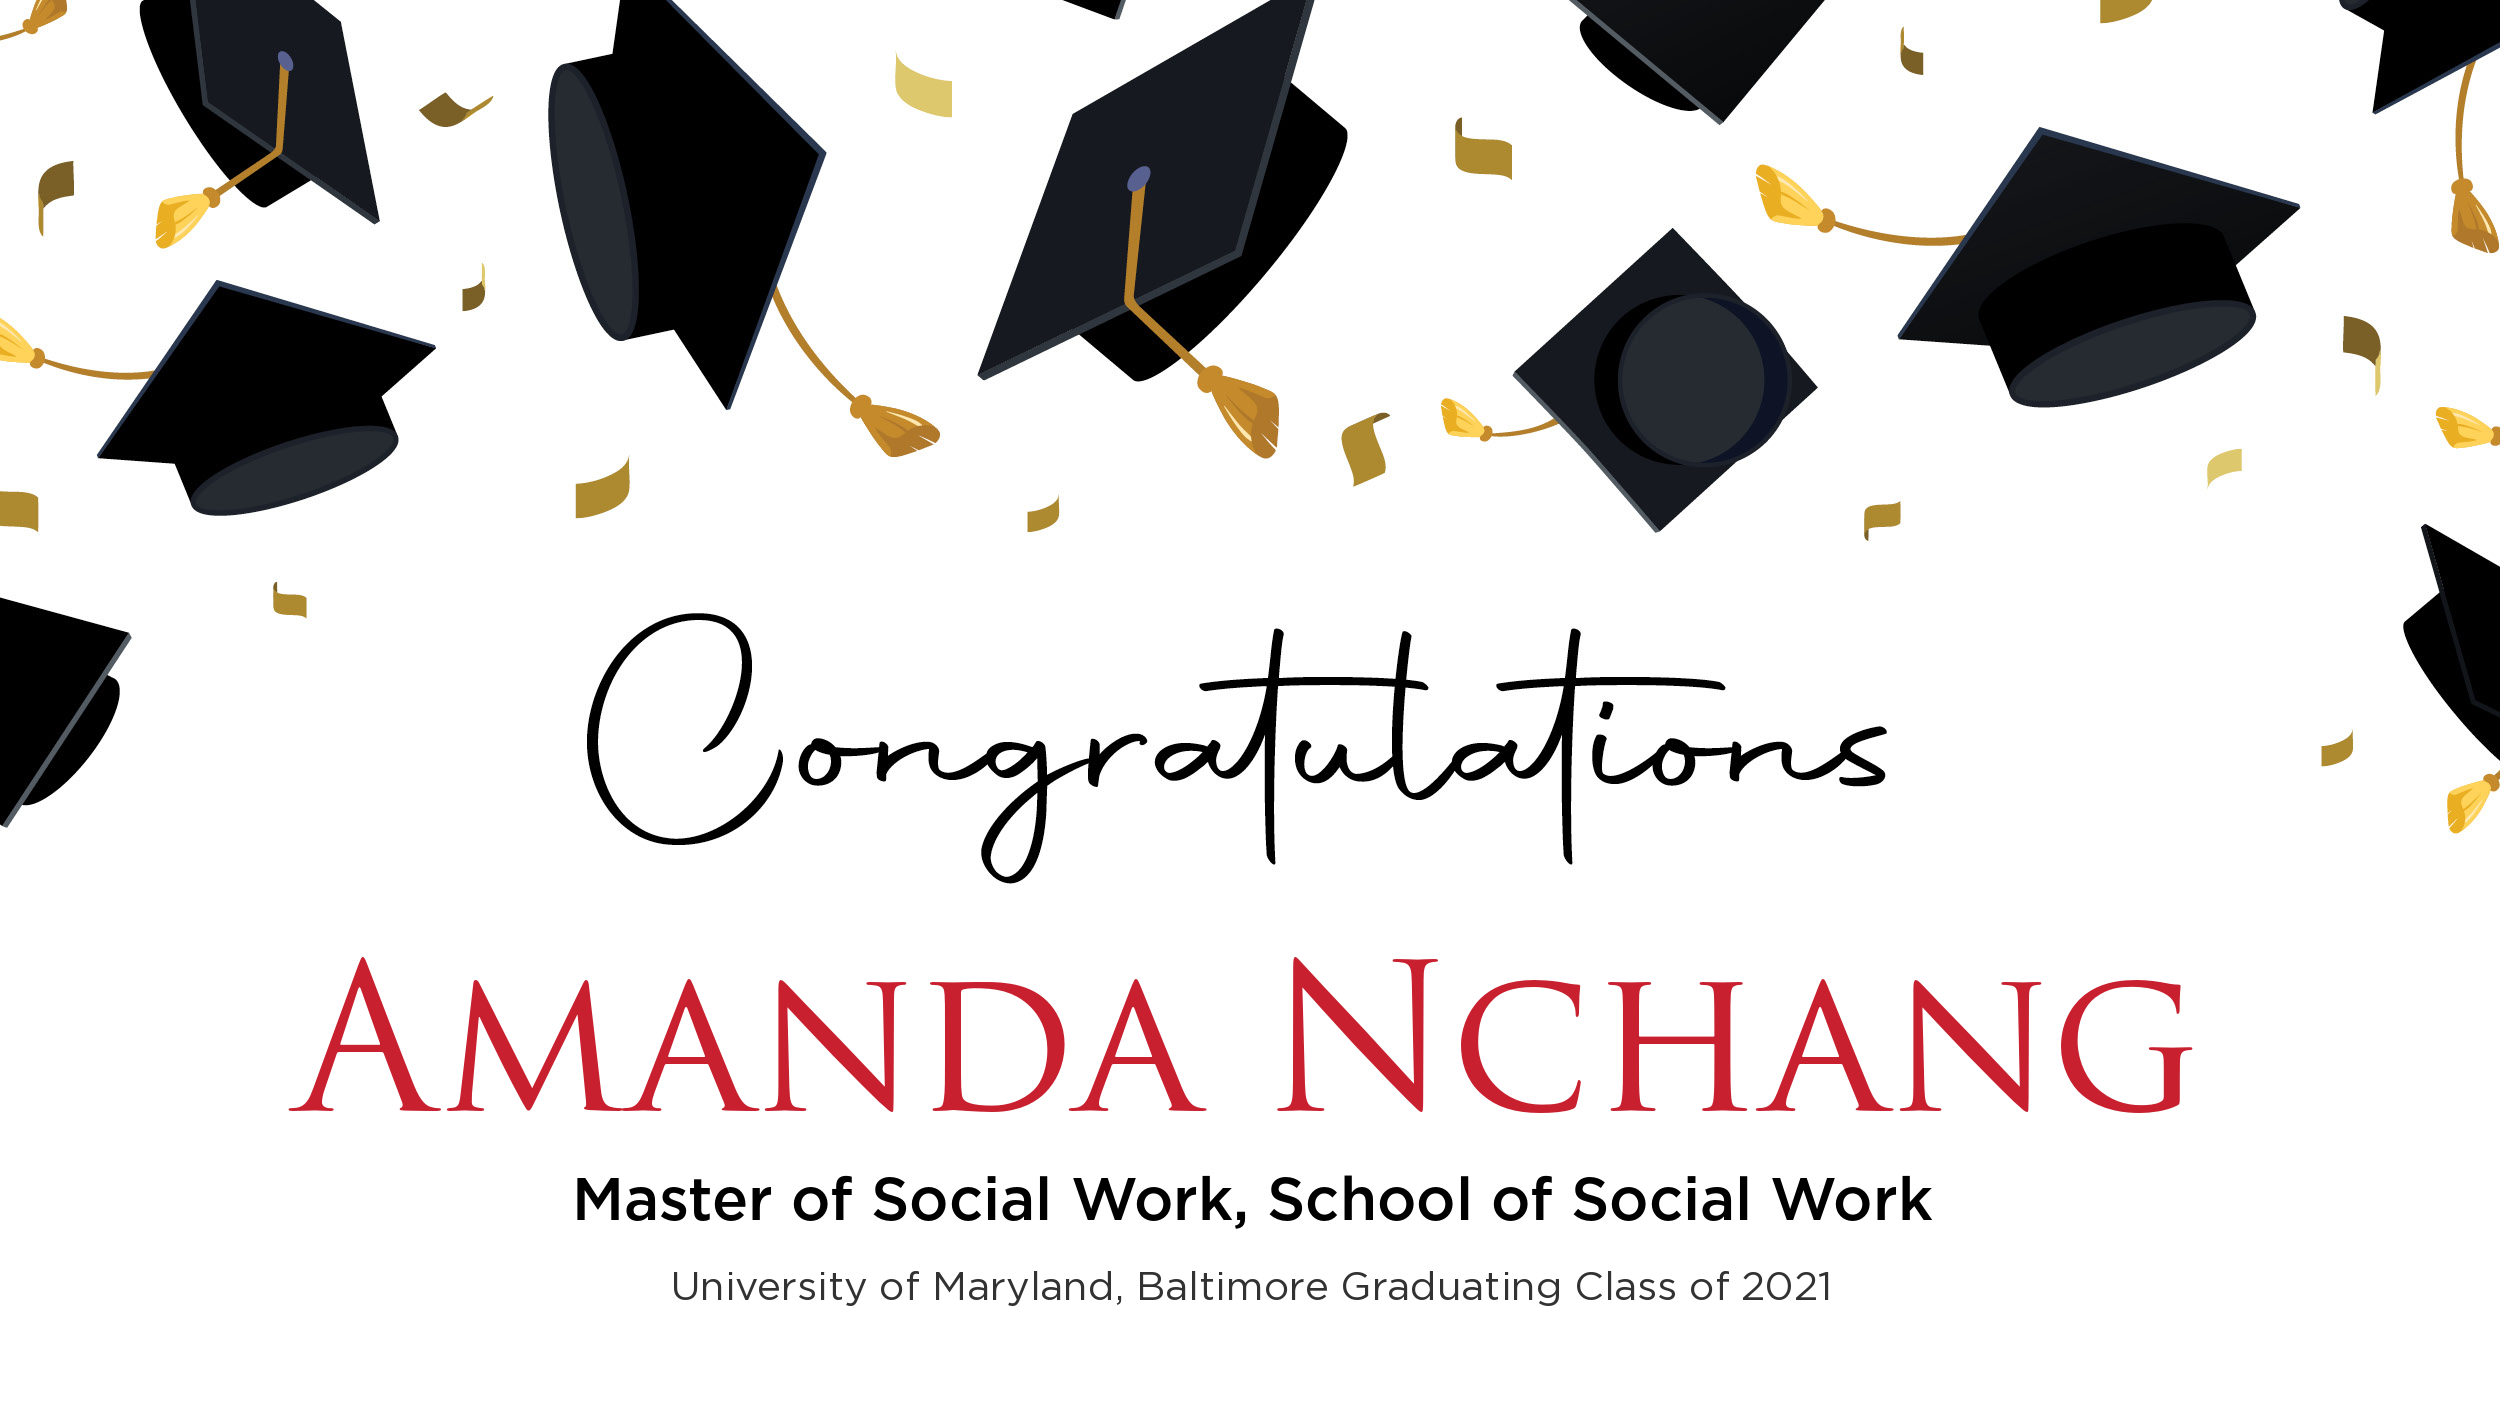 Congratulations Amanda Nchang, Master of Social Work